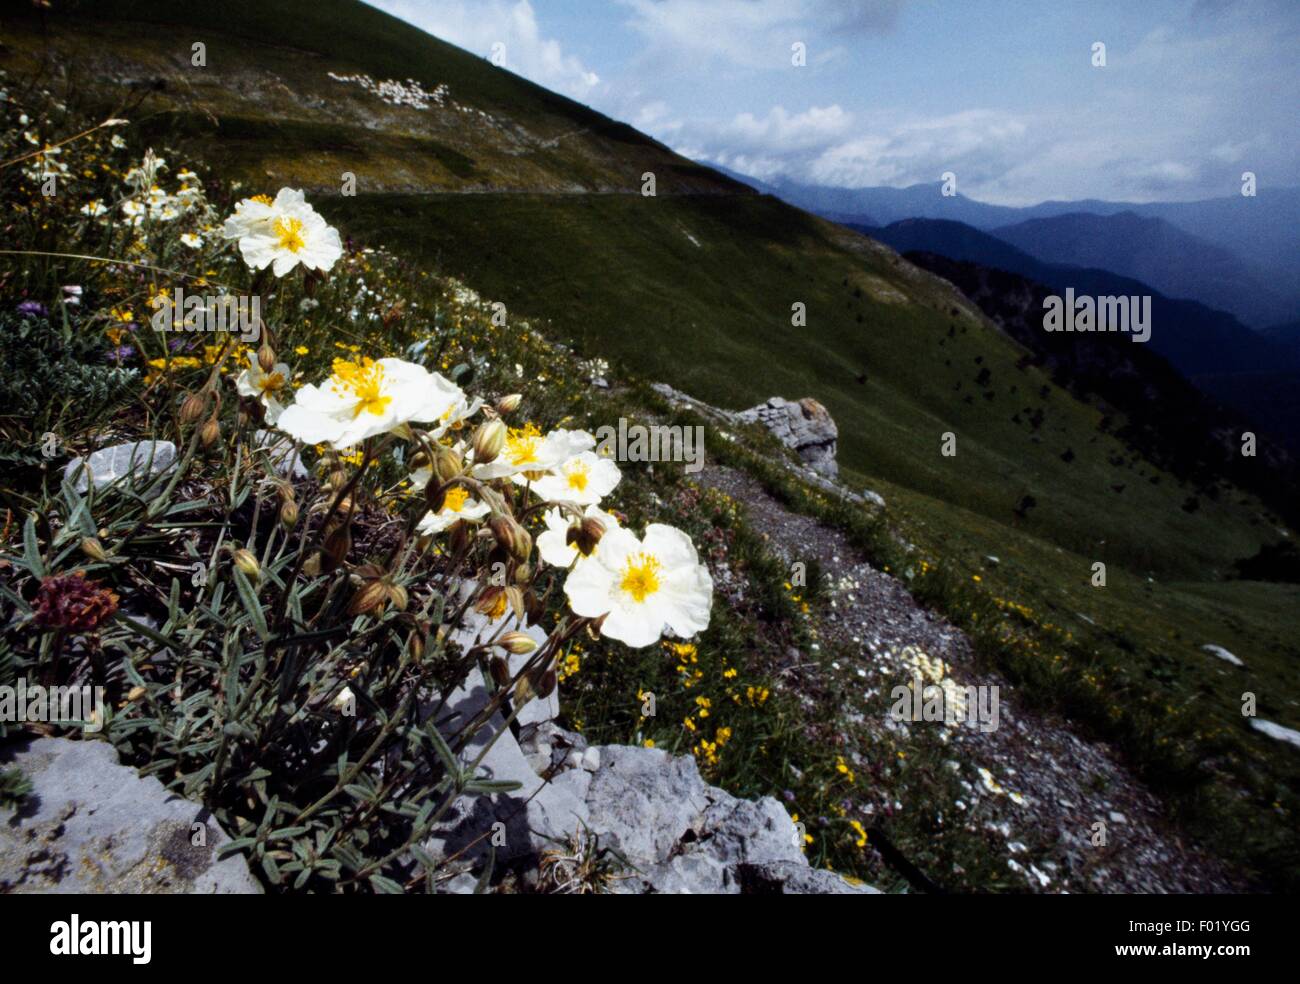 White rock rose (Helianthemum apenninum), Vallee des Merveilles, Mercantour National Park (Parc national du Mercantour), Provence-Alpes-Cote d'Azur, France. Stock Photo